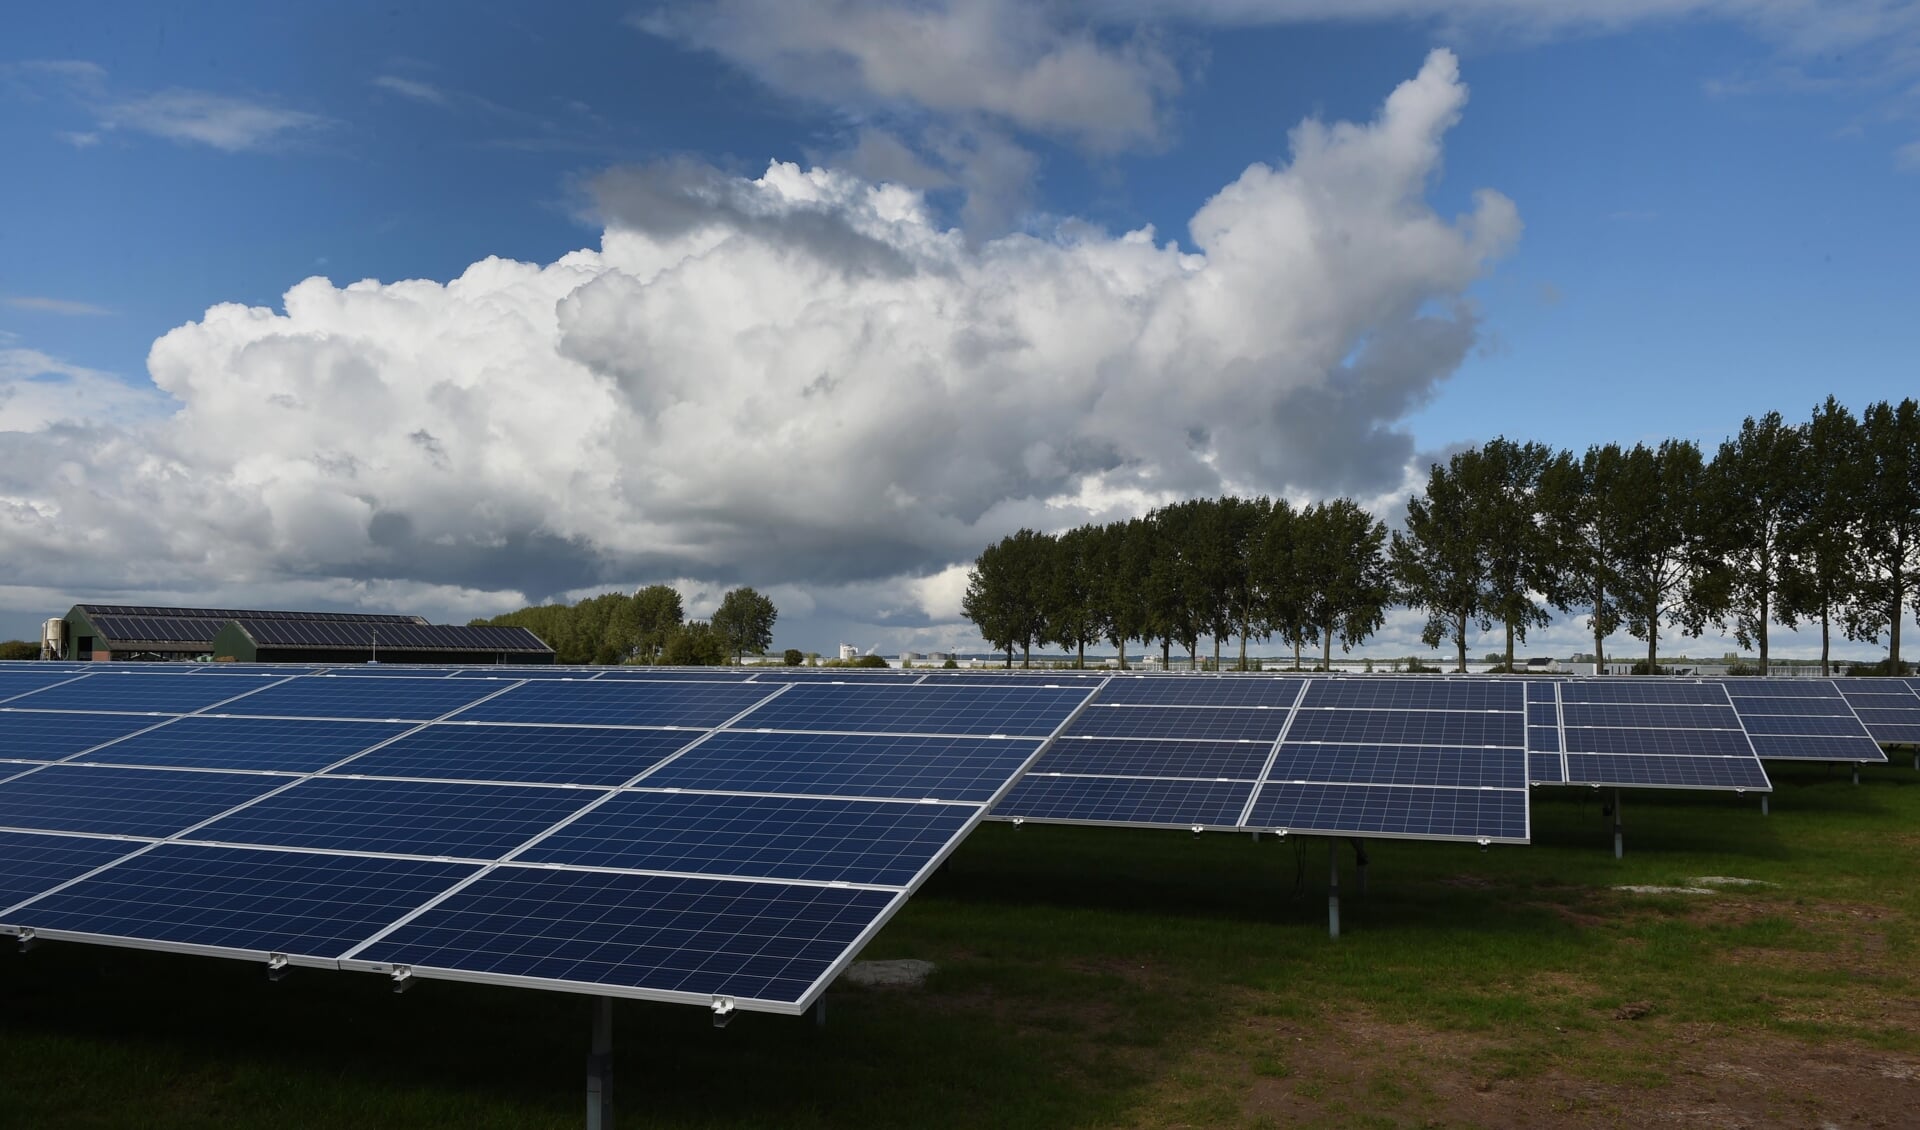 Het zonnepark in aanbouw aan de Lingewal in Bemmel heeft een oppervlakte van bijna 20 hectare. (foto: Sjaak Veldkamp)